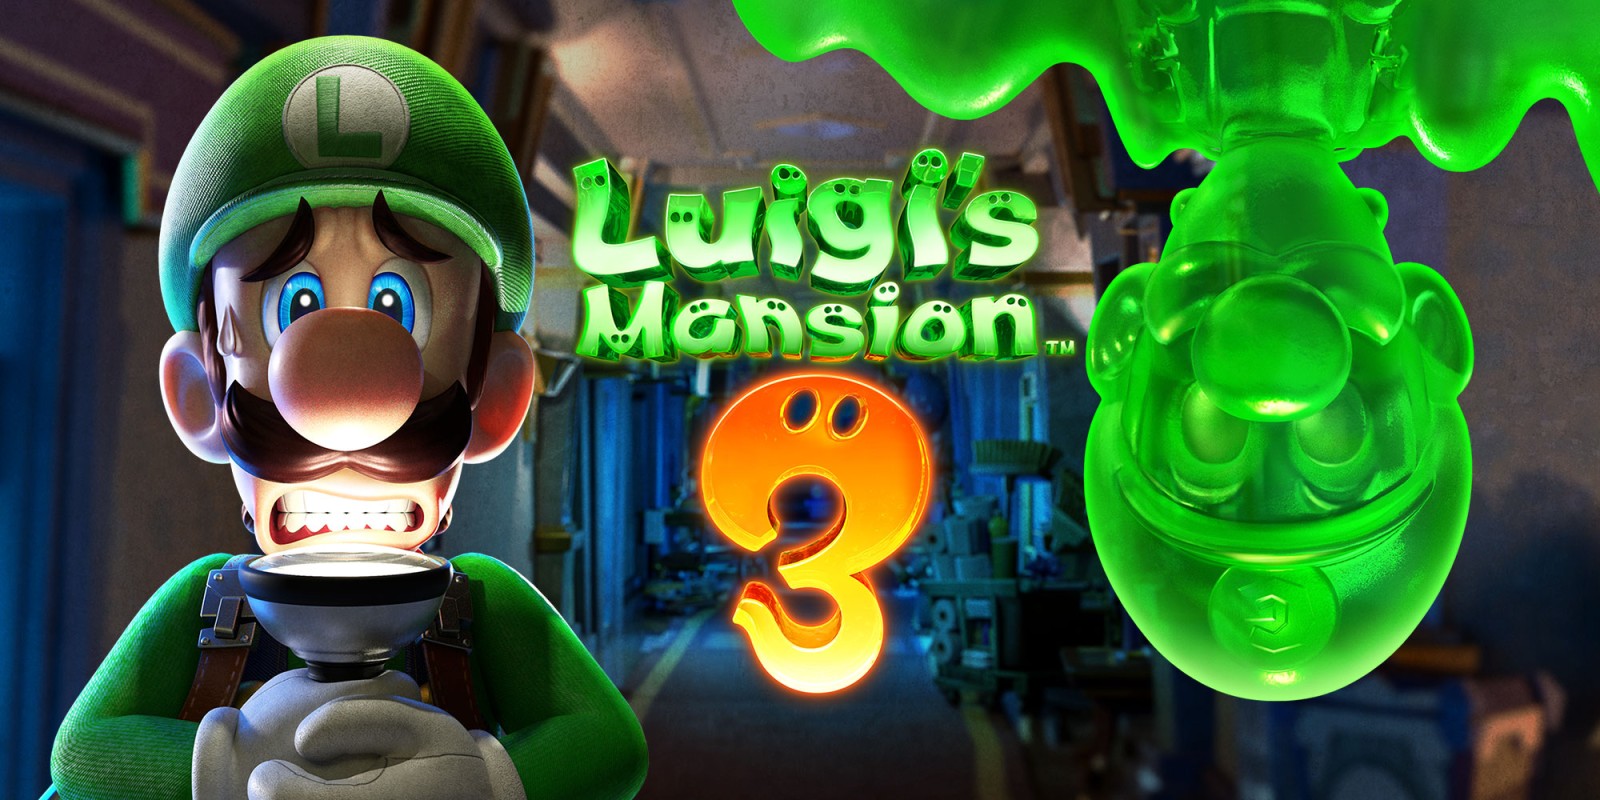 Luigis Mansion video game